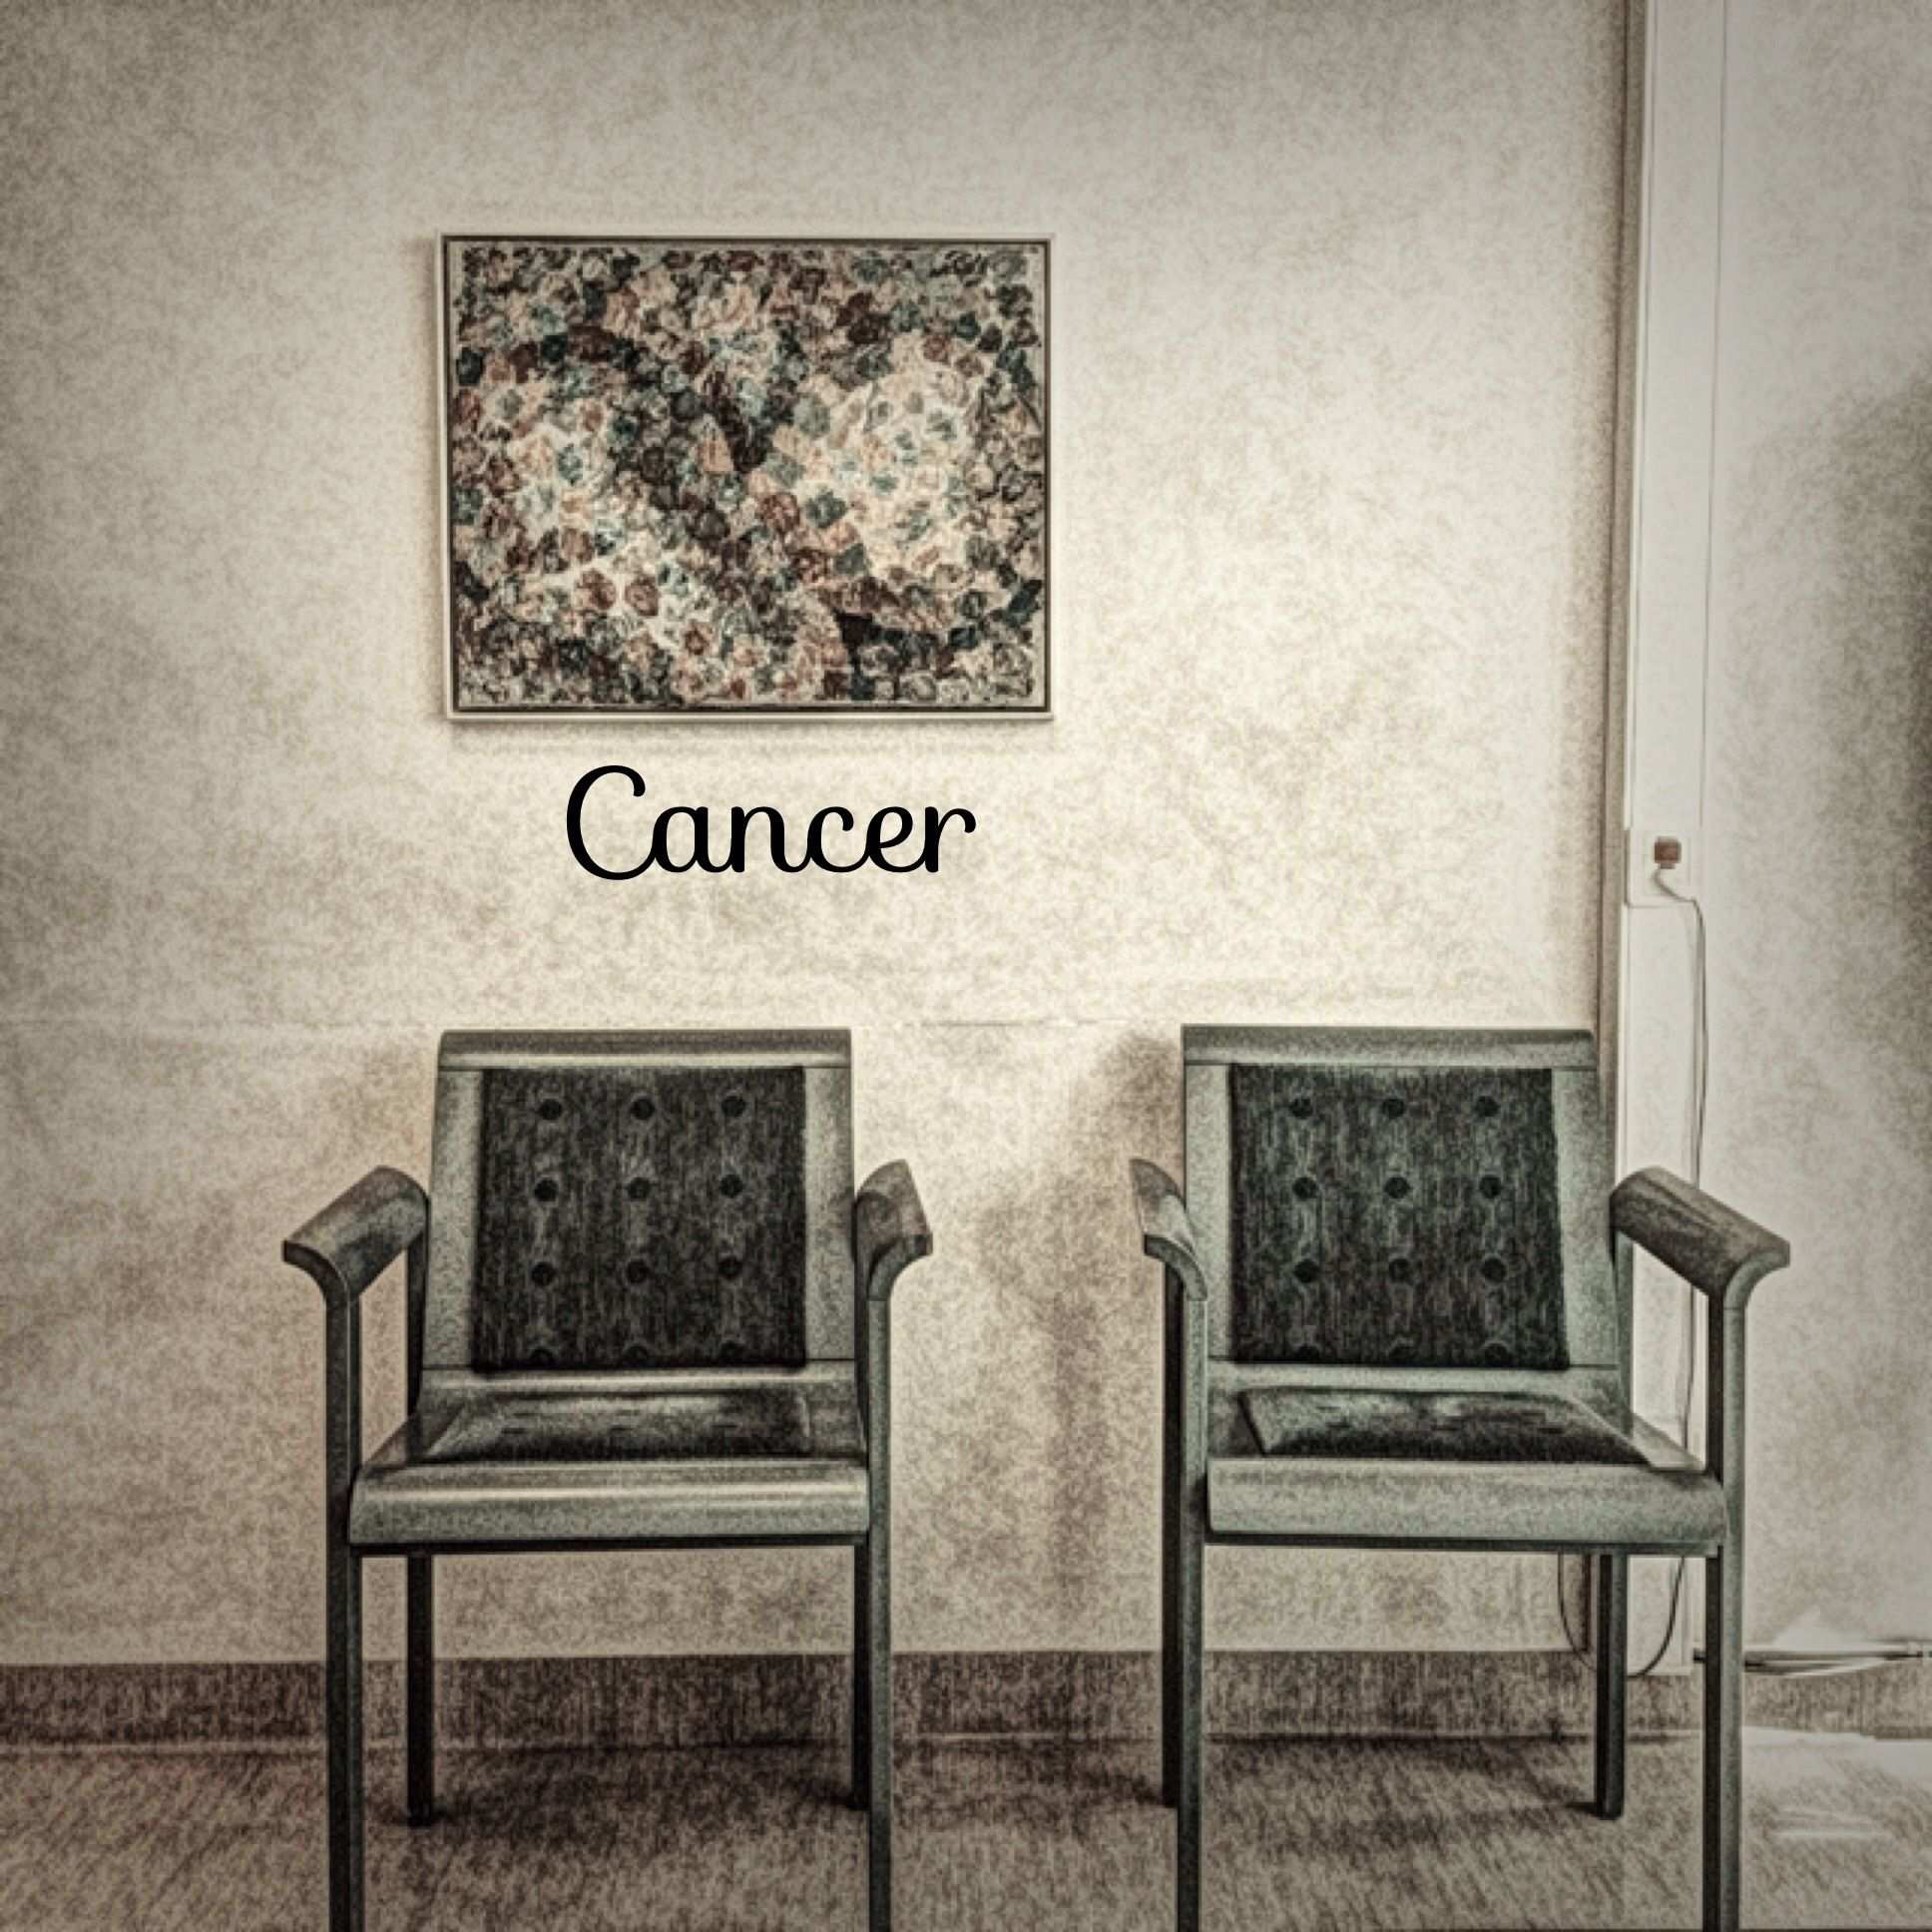 Els càncers més letals: pulmó, colorectal i mama